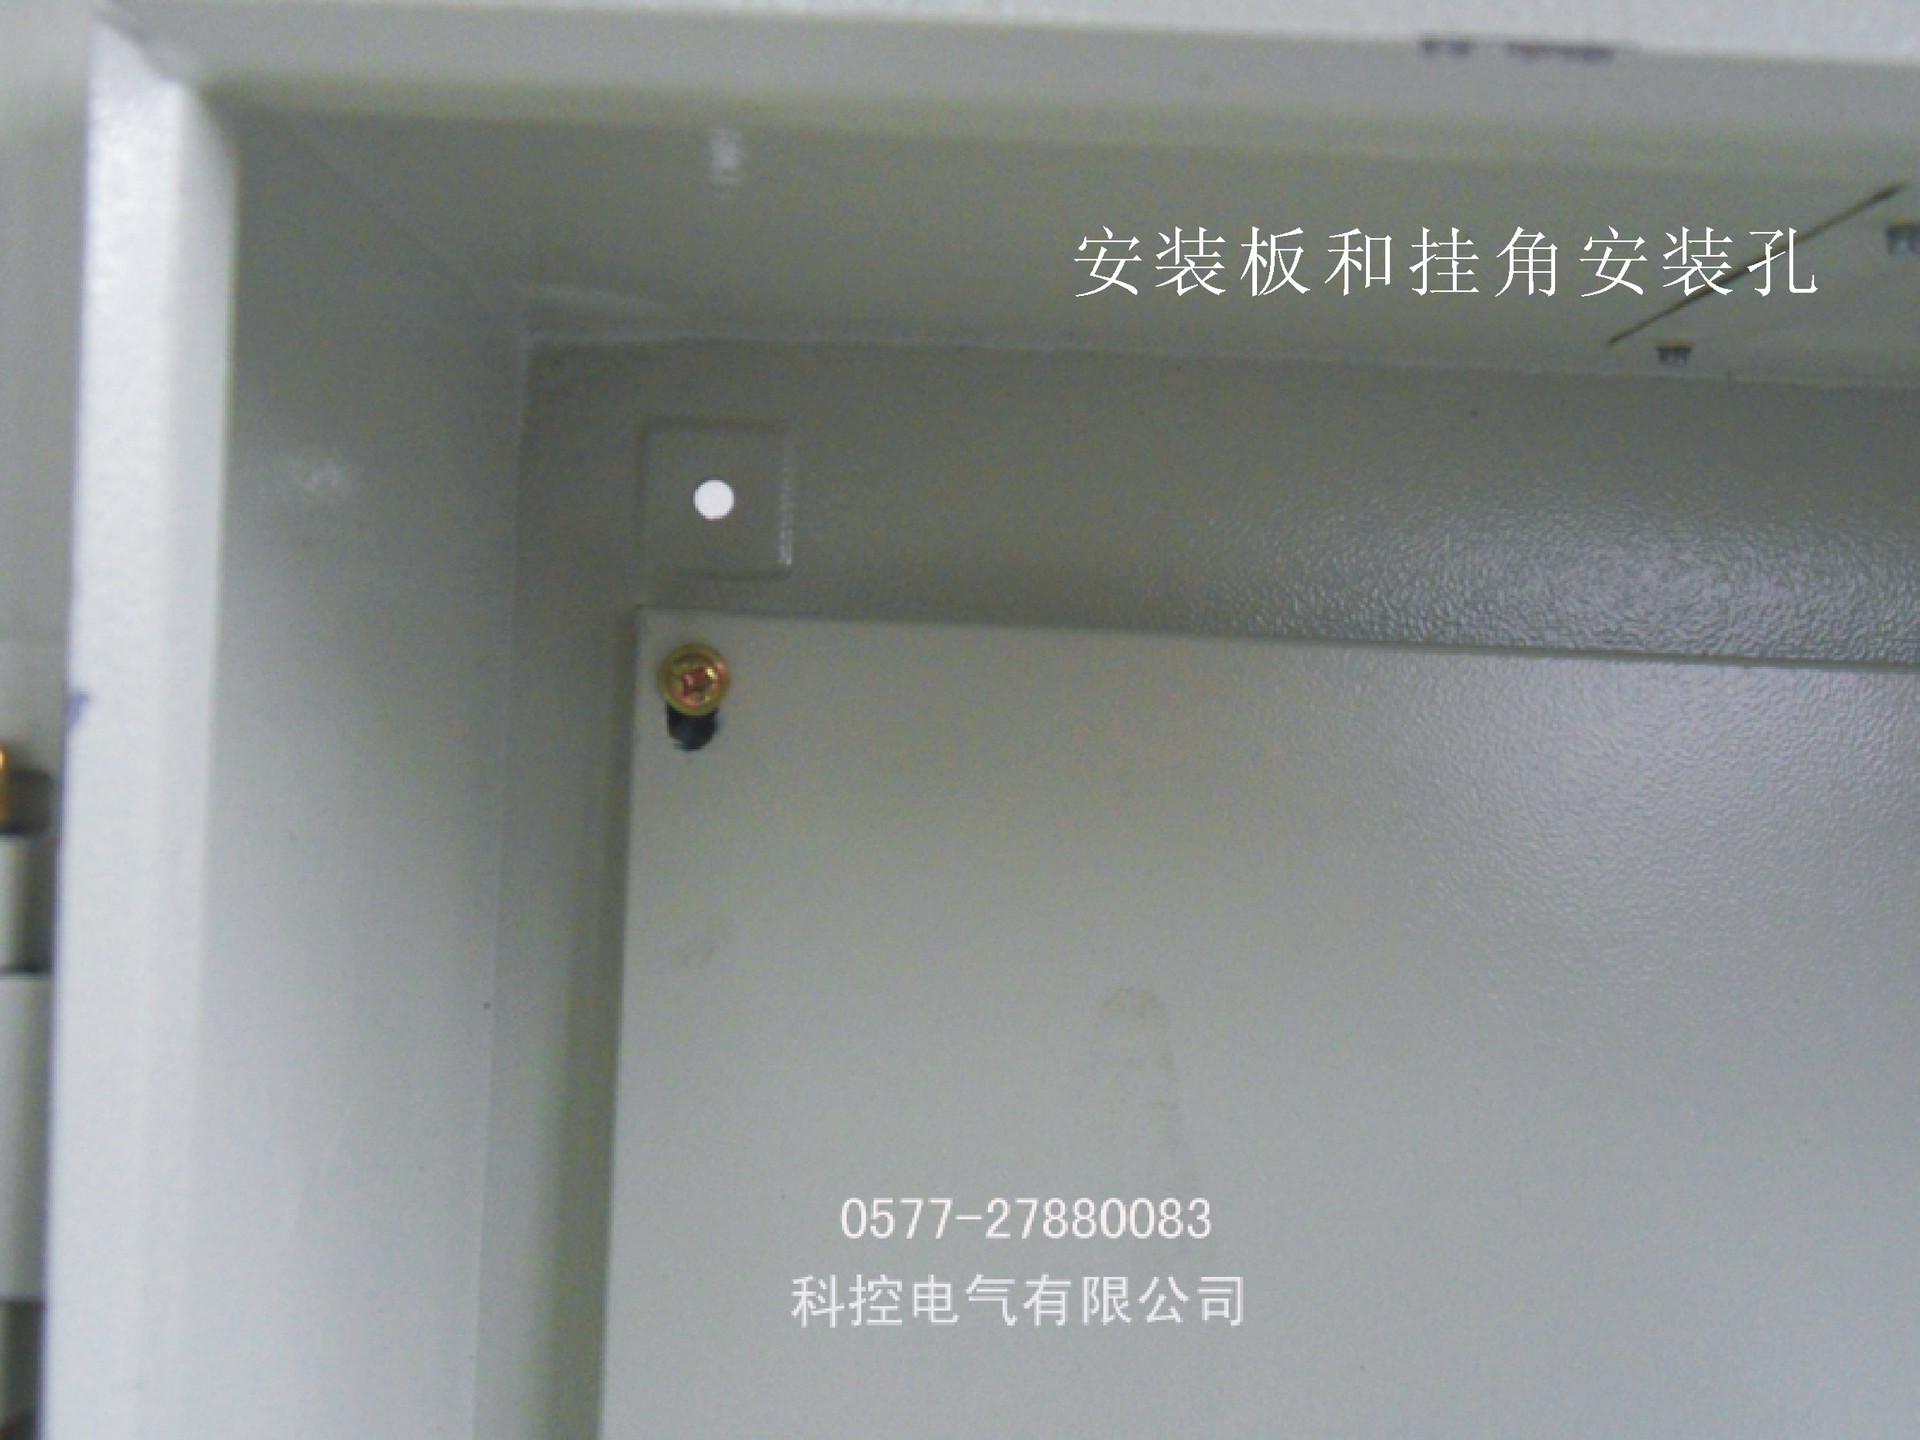 户内型 JXF基业箱 铁质配电箱 户外防雨型电控箱生产厂家 控制柜,控制,柜